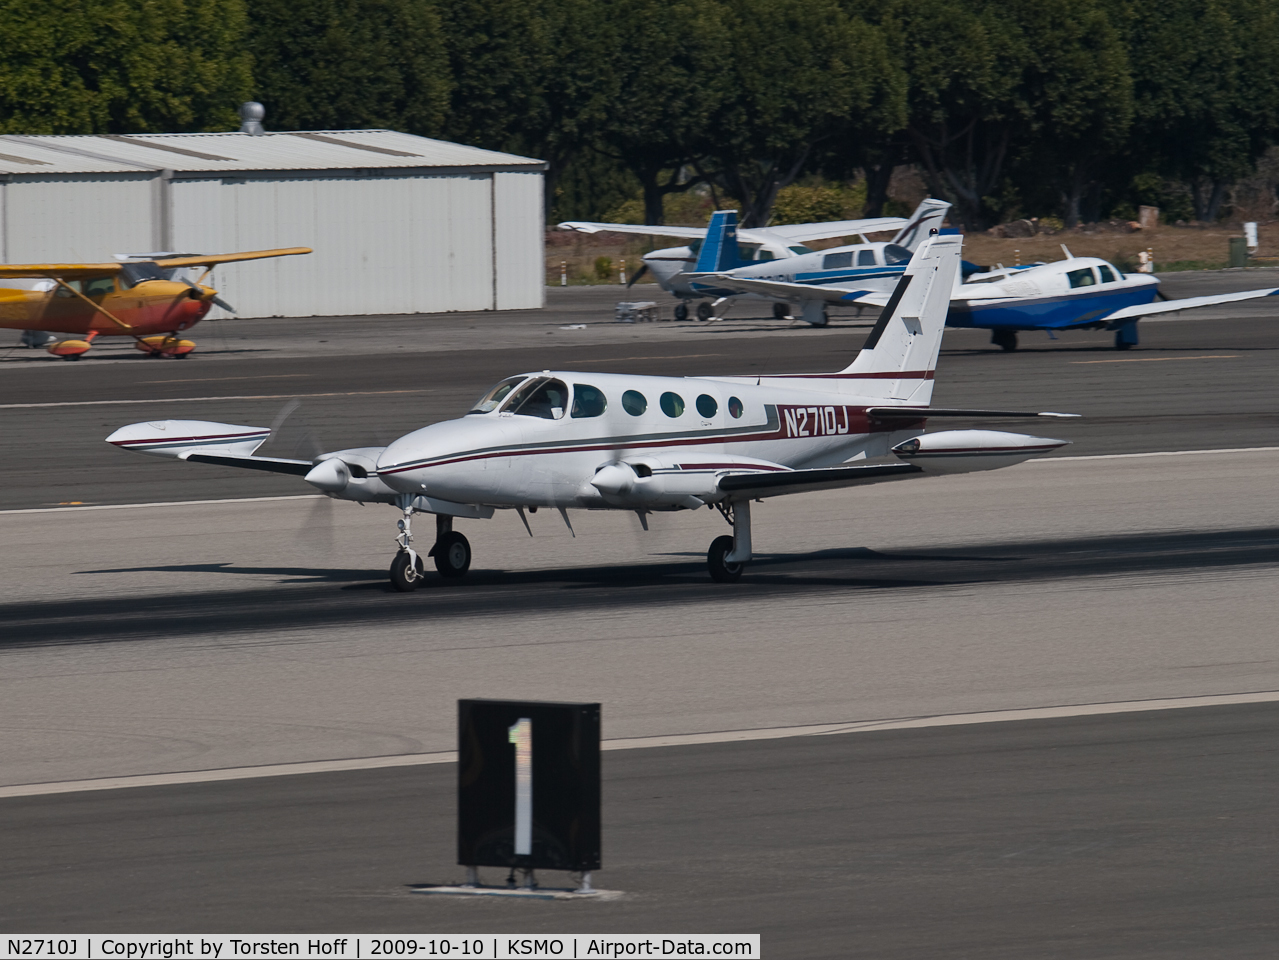 N2710J, 1979 Cessna 335 C/N 335-0043, N2710J departing from RWY 21